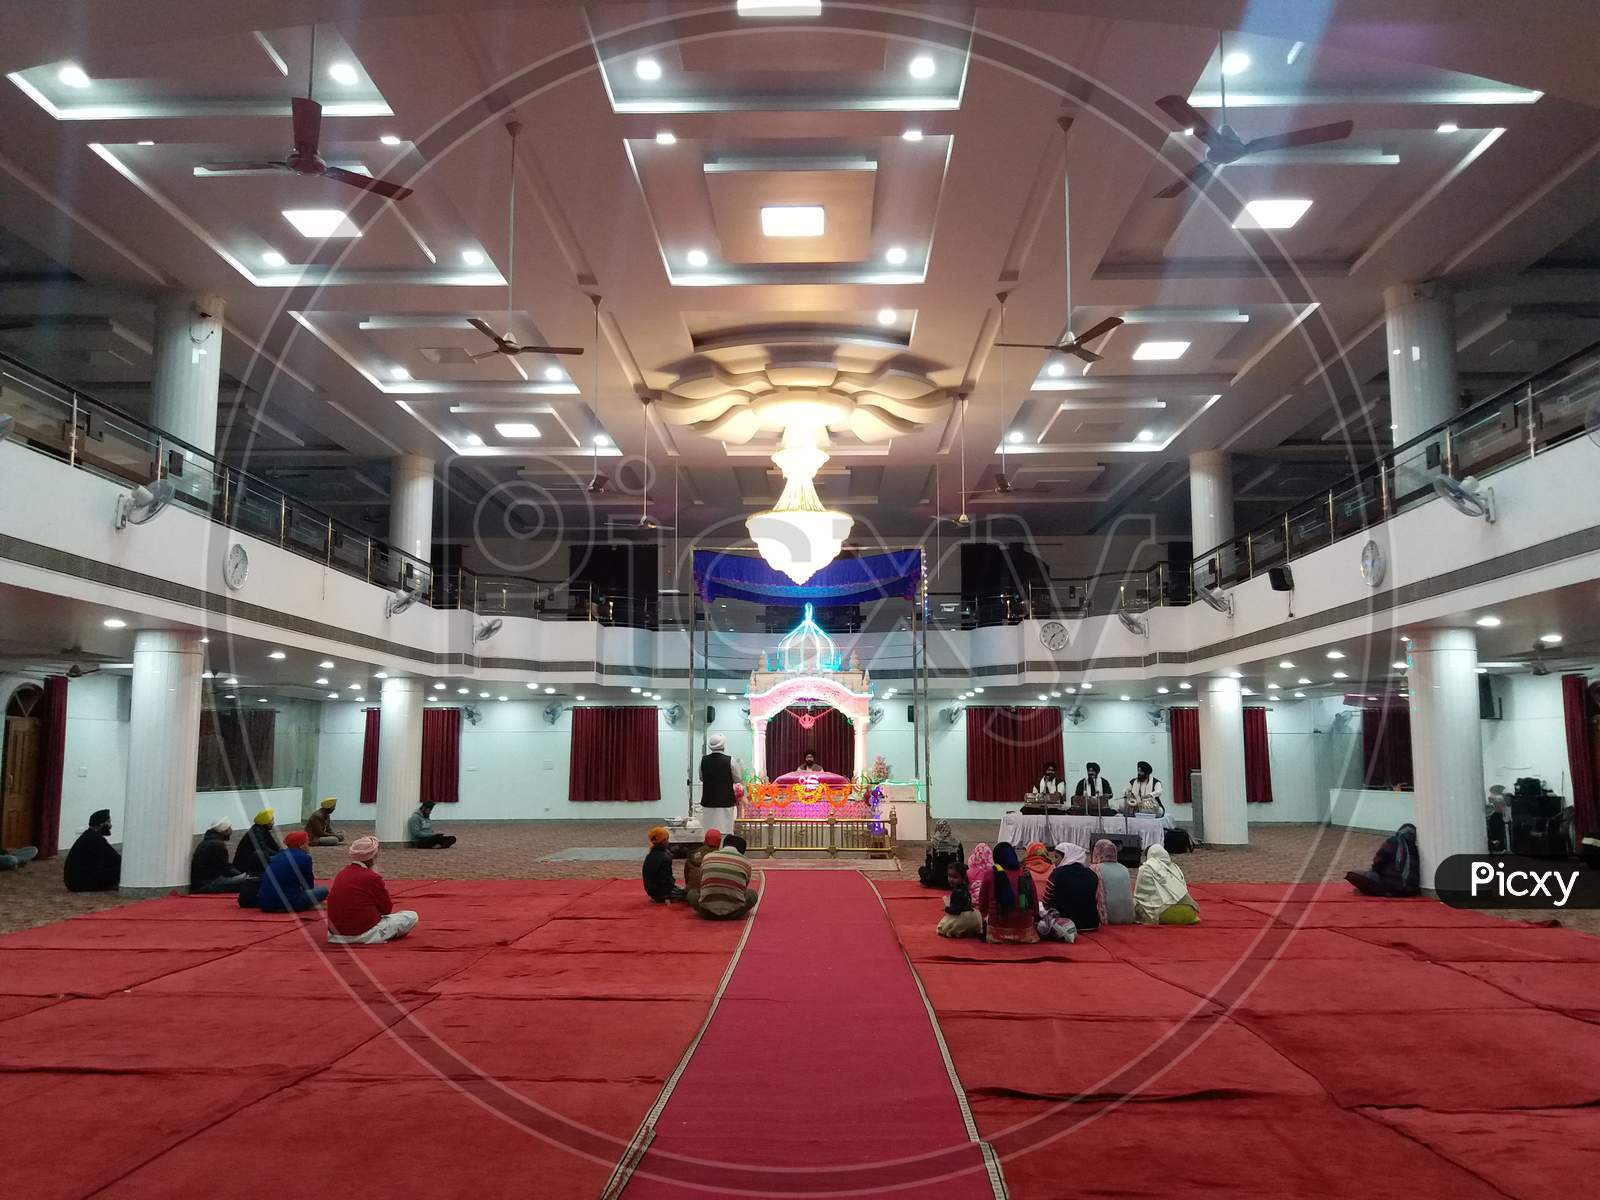 Inside the Gurdwara